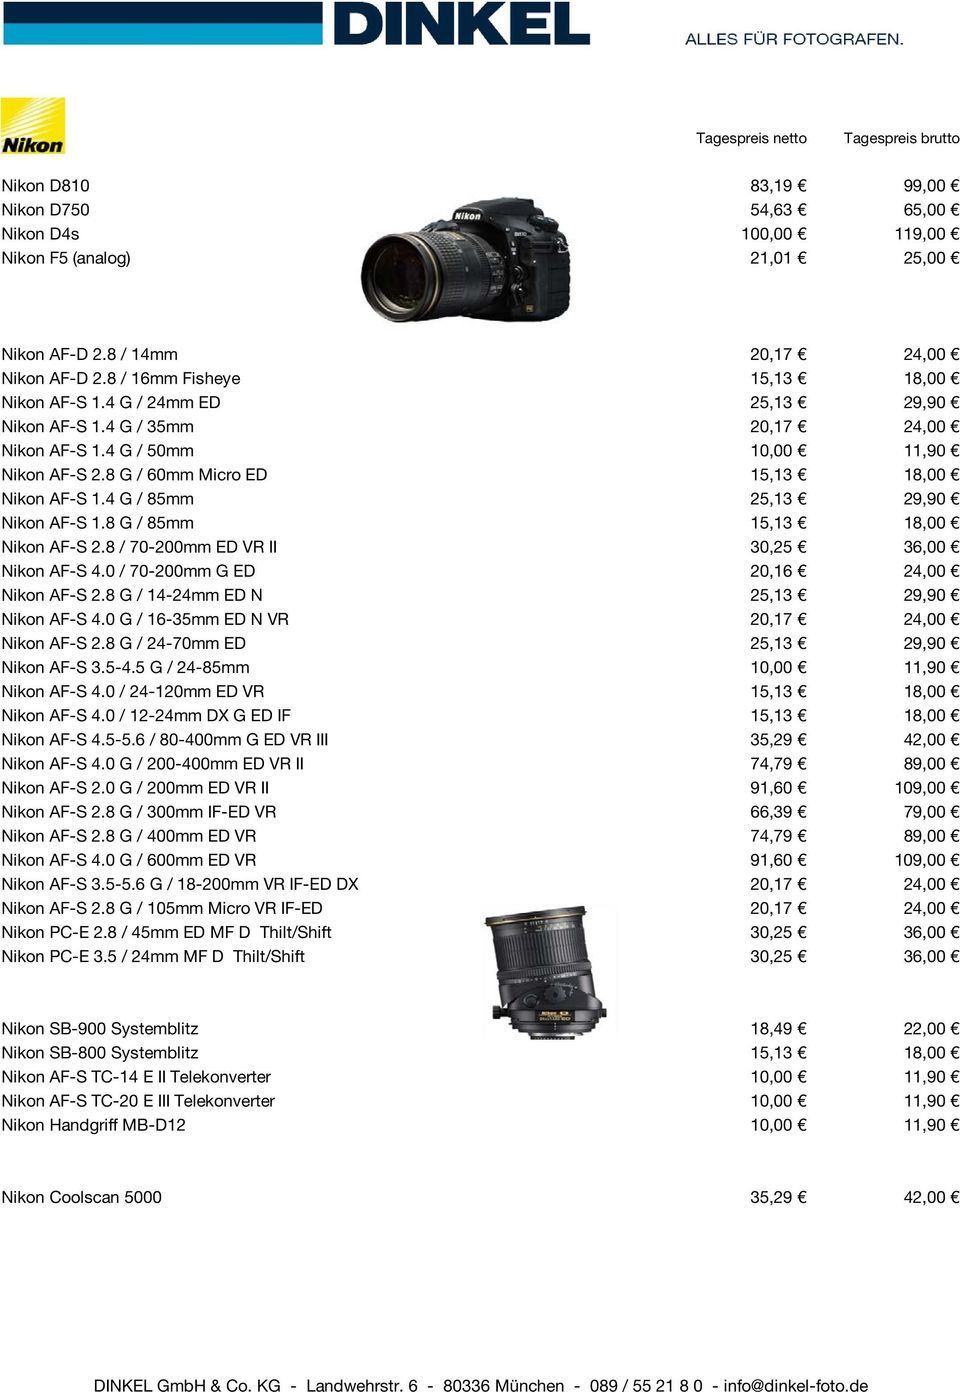 8 G / 85mm 15,13 18,00 Nikon AF-S 2.8 / 70-200mm ED VR II 30,25 36,00 Nikon AF-S 4.0 / 70-200mm G ED 20,16 24,00 Nikon AF-S 2.8 G / 14-24mm ED N 25,13 29,90 Nikon AF-S 4.